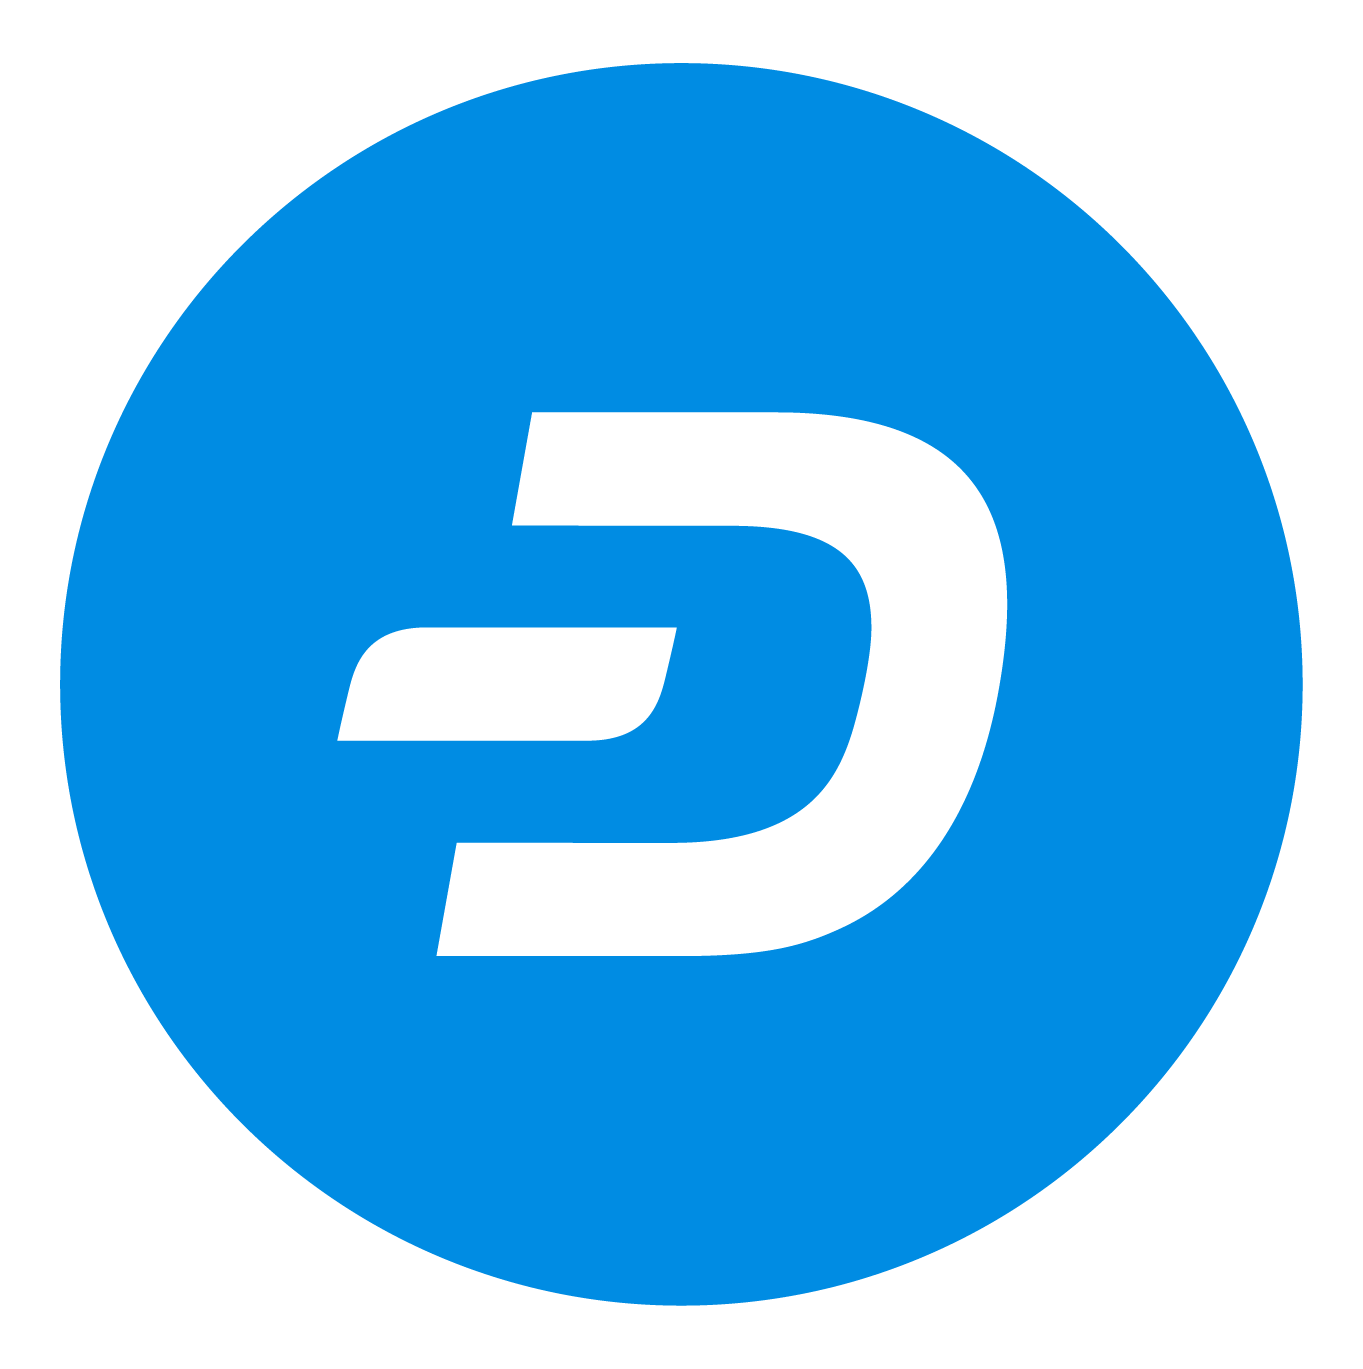 DASH Logo